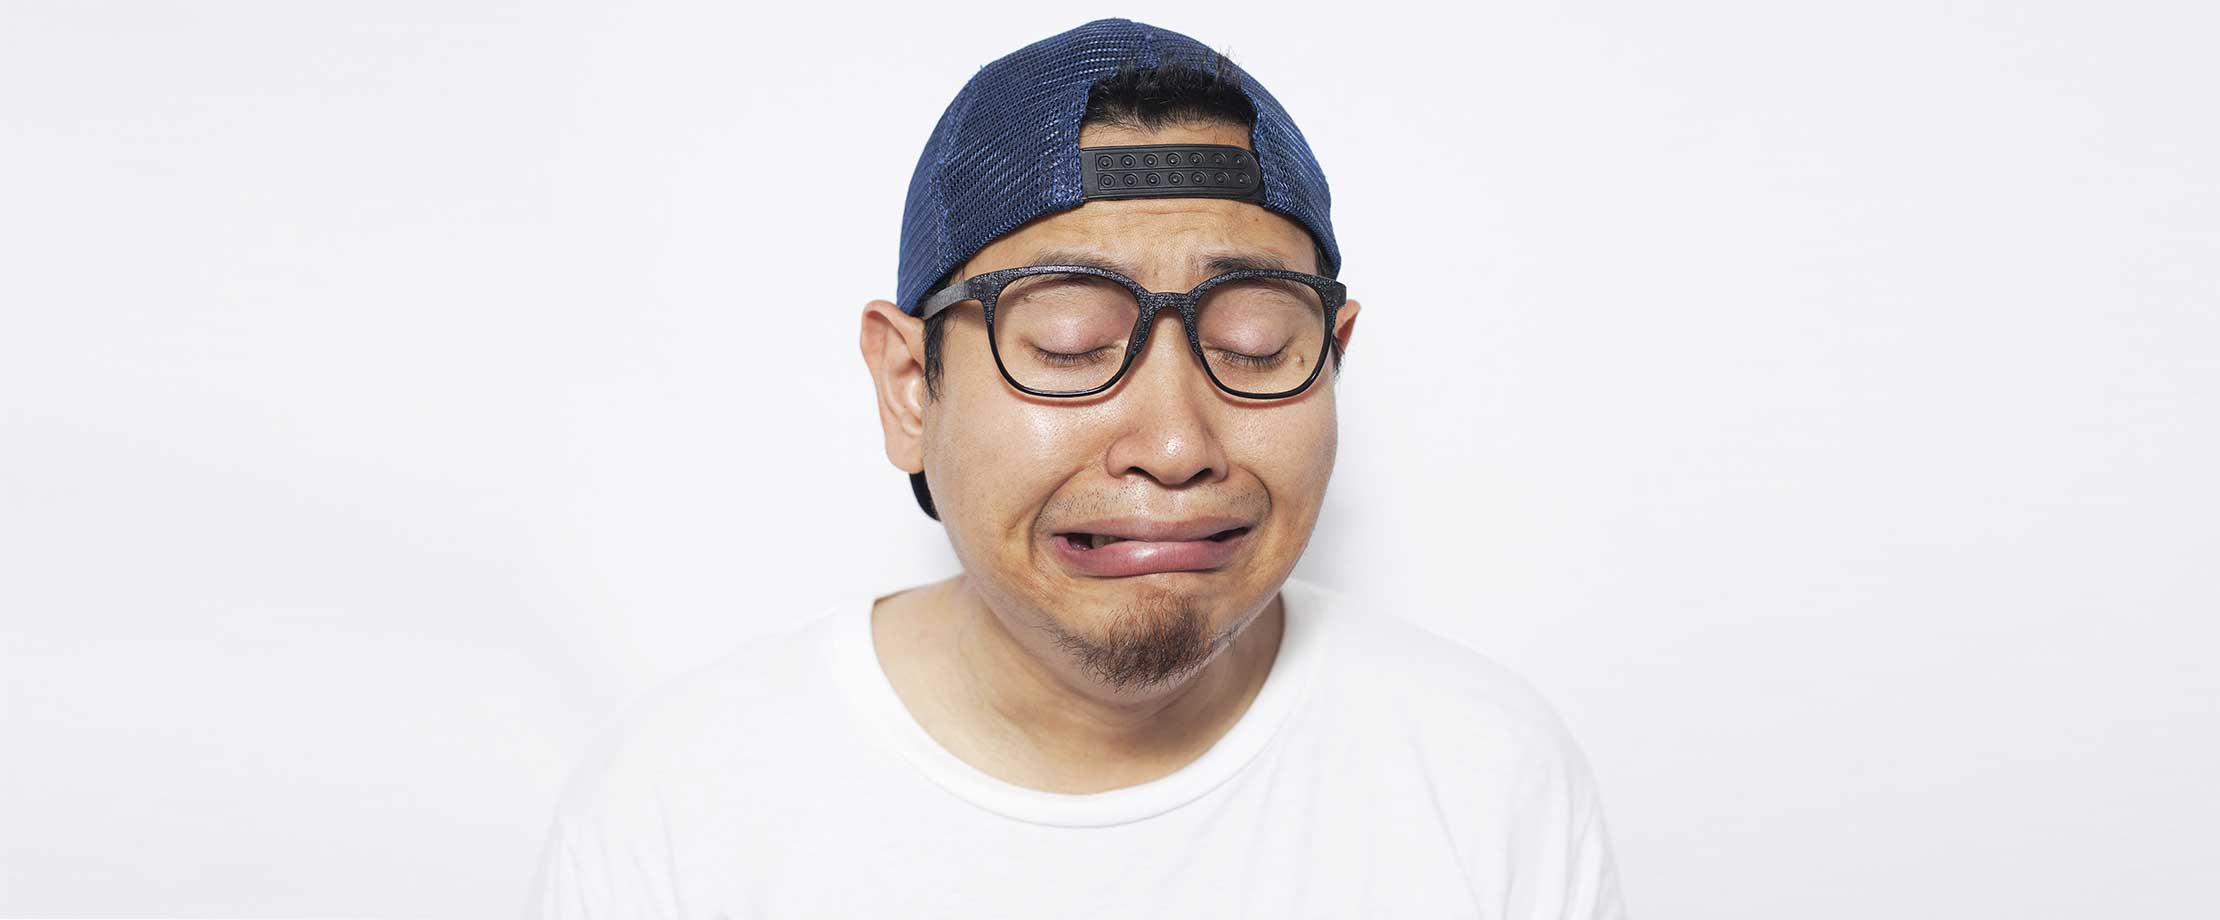 Ein Mann mit Brille, blauer, verkehrt aufgesetzter Kappe und weißem T-Shirt steht vor einer weißen Wand und weint. Sein Gesicht ist vor Trauer verzogen.